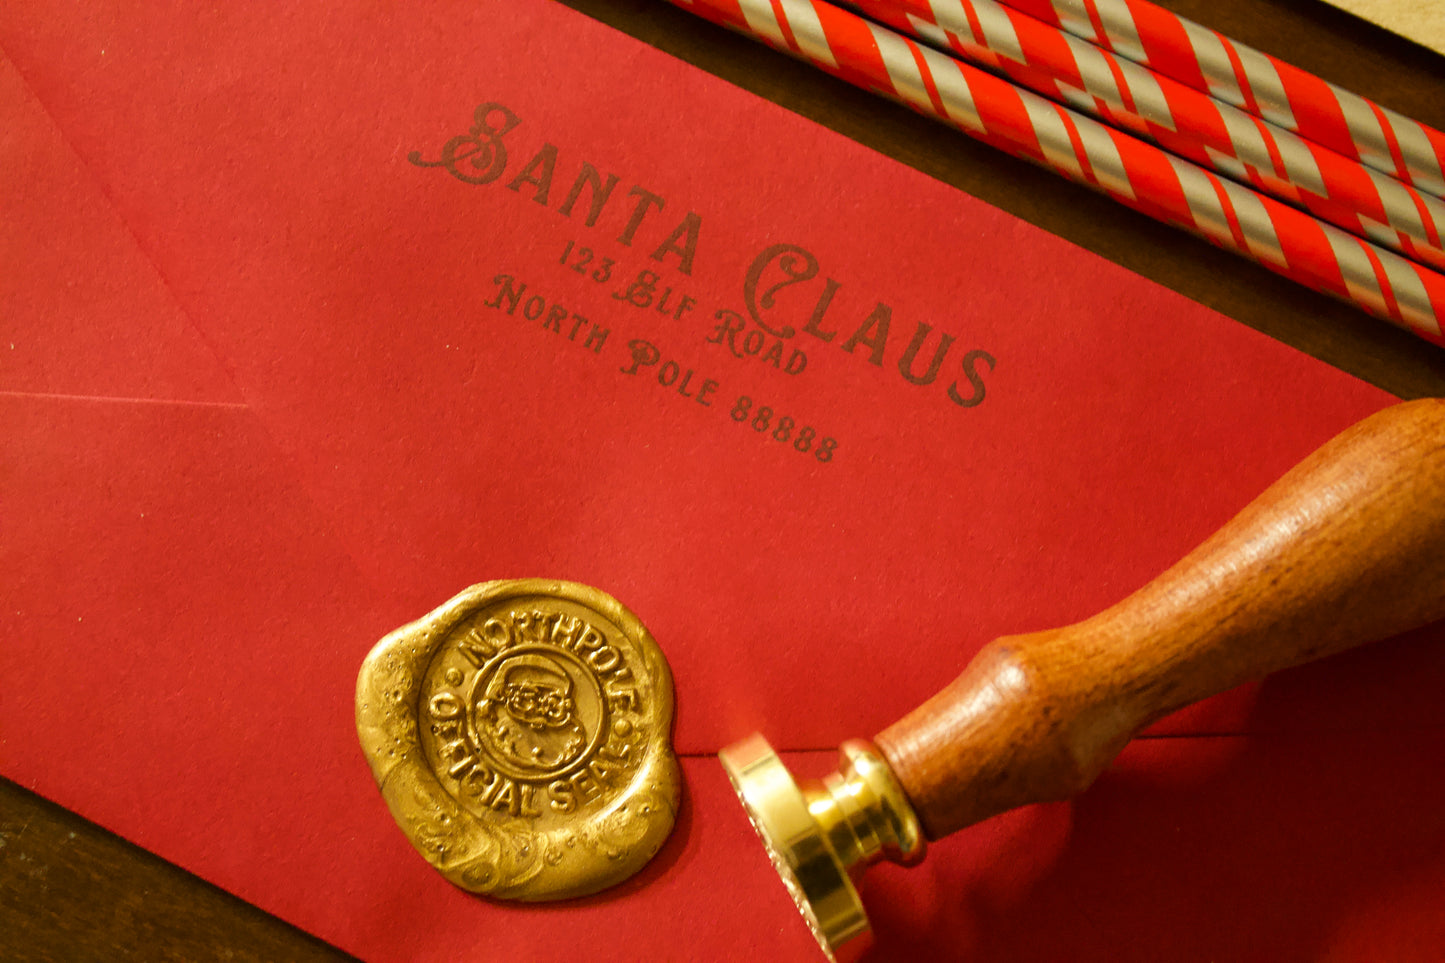 Santa Letter Set (Sent by Mail Option)